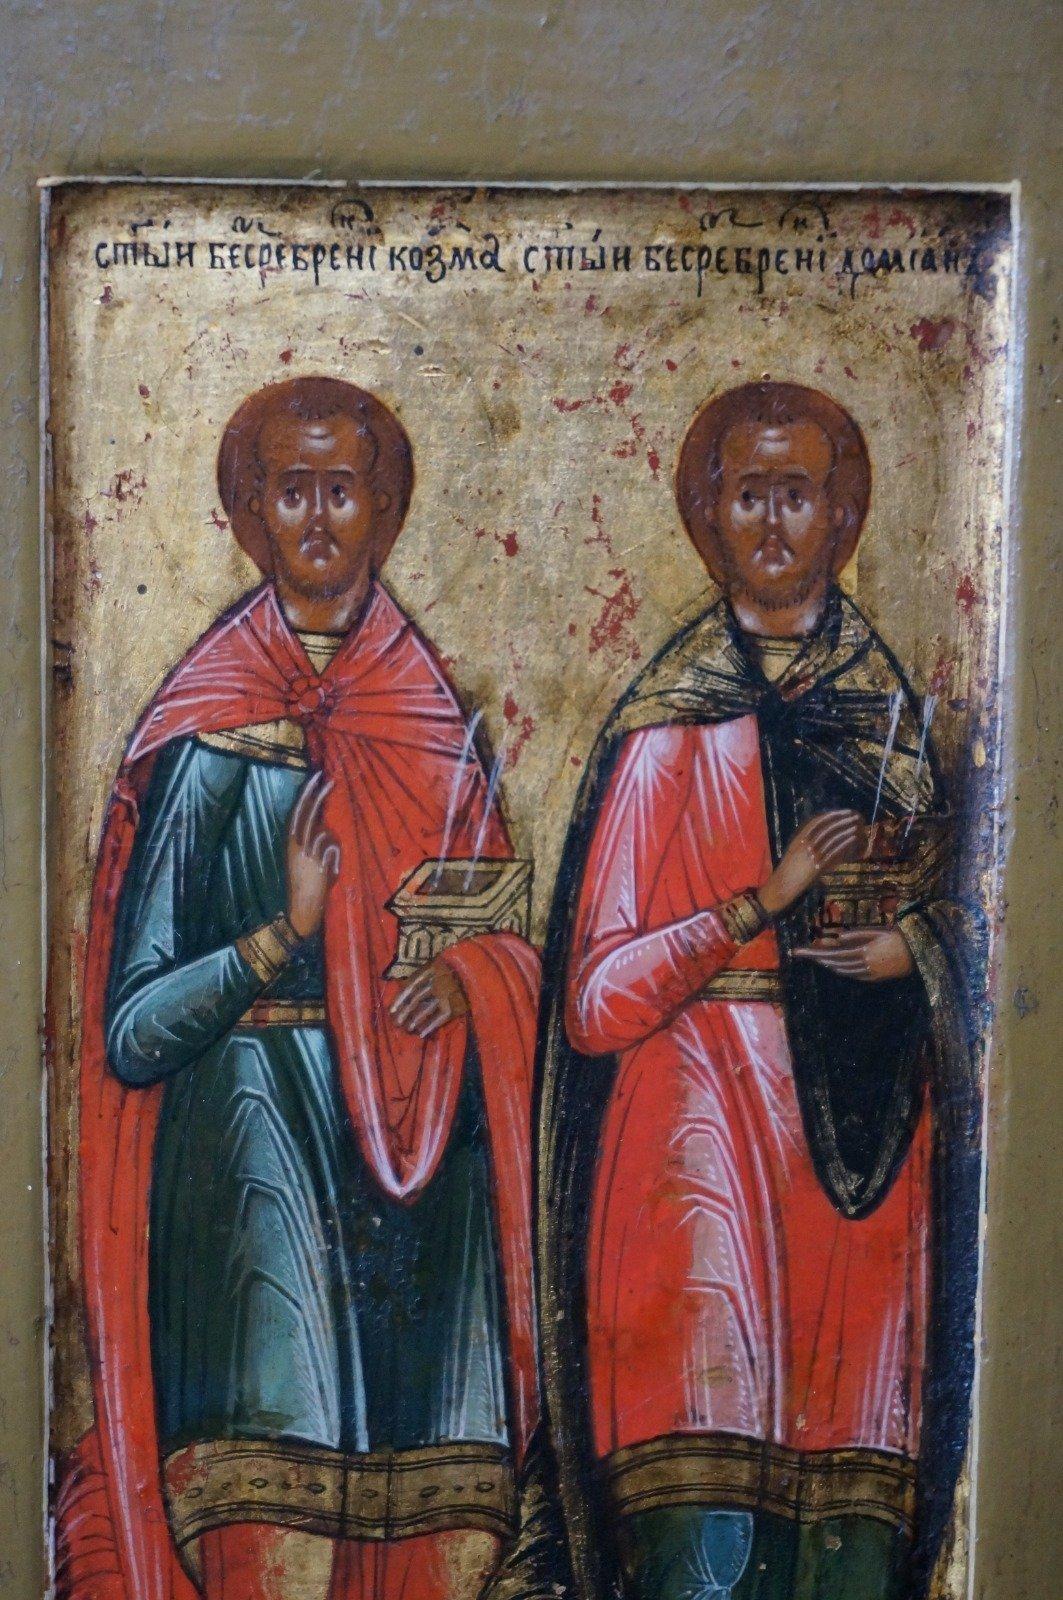 Mittelrussische Miniaturikone, die den heiligen arabischen Zwillingsbrüdern und Ärzten Cosmas und Damianus gewidmet ist. 

Cosmas und Damianus stammten aus Syrien. Sie waren so genannte Agioi Anargyroi (wörtlich: die, die kein Silber nehmen) und